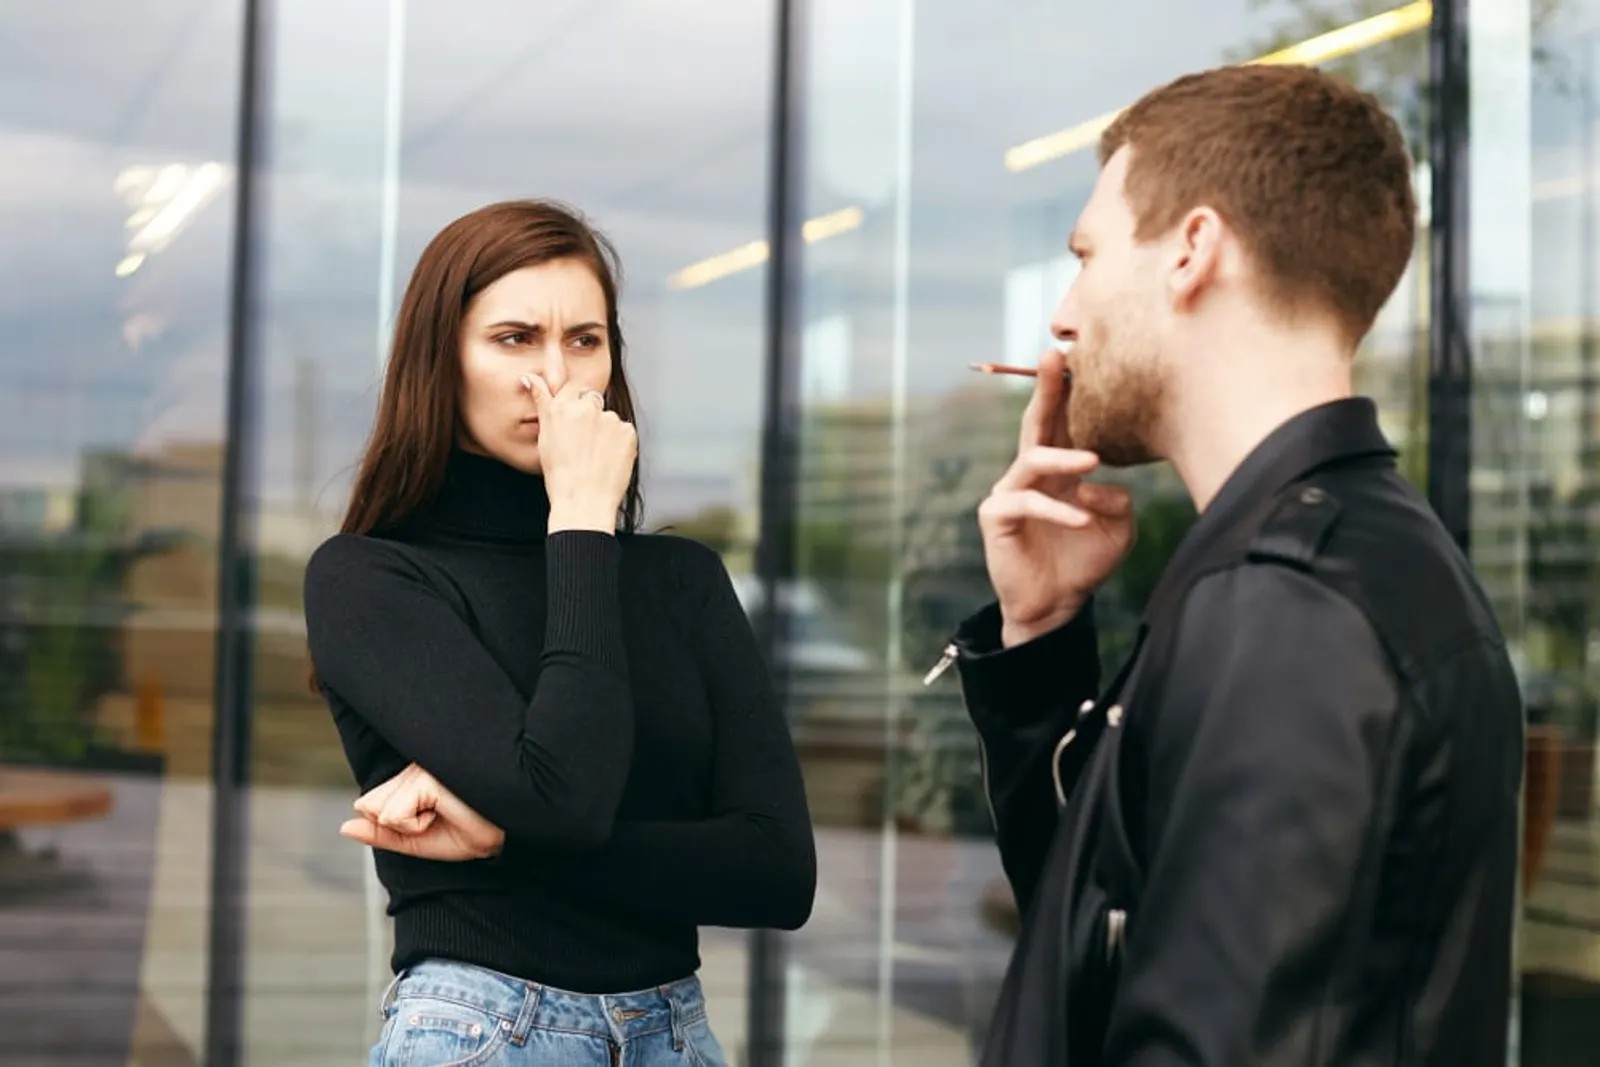 Жена пассивная. Курение на остановке. Человек среди курящих. Пассивное курение. Общение с некурящими друзьями.